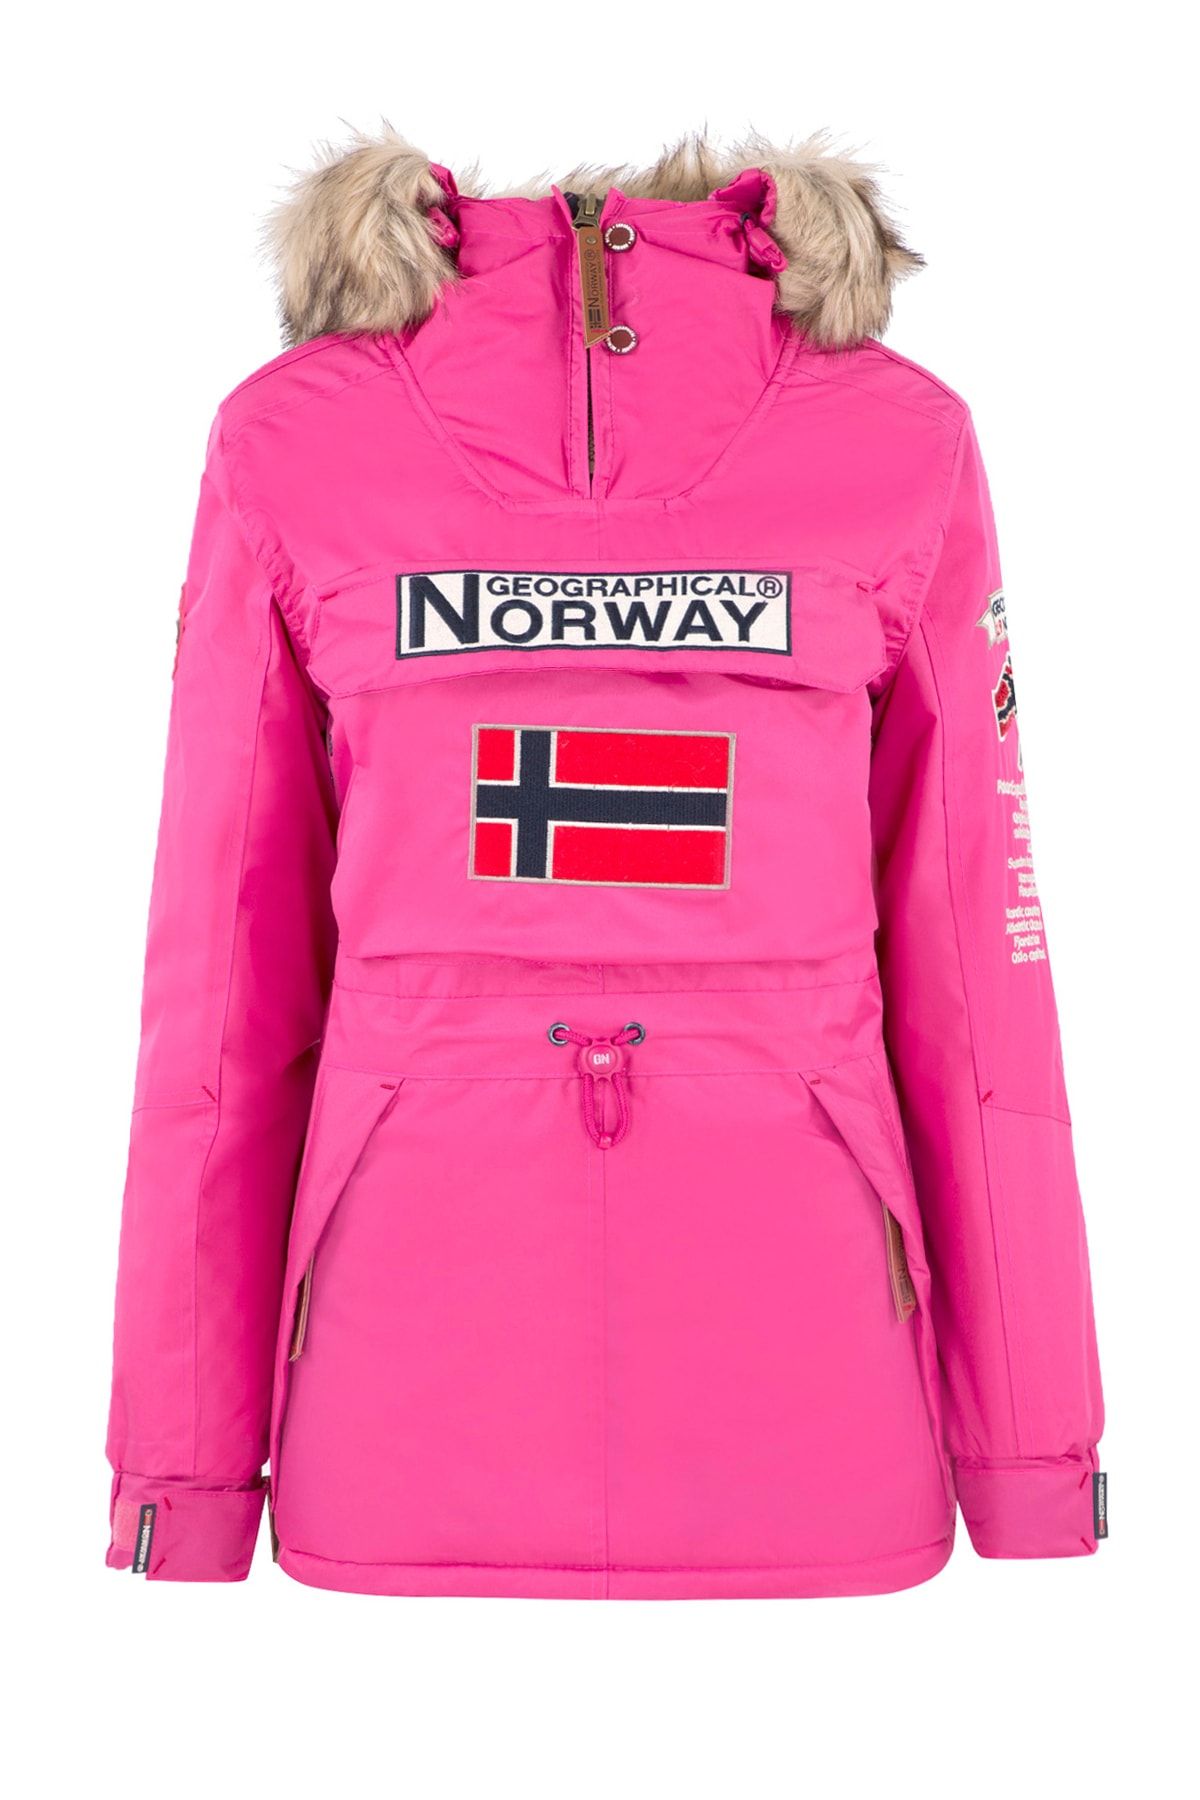 Norway Geographical Kadın Fuşya Uzun Kollu Mont